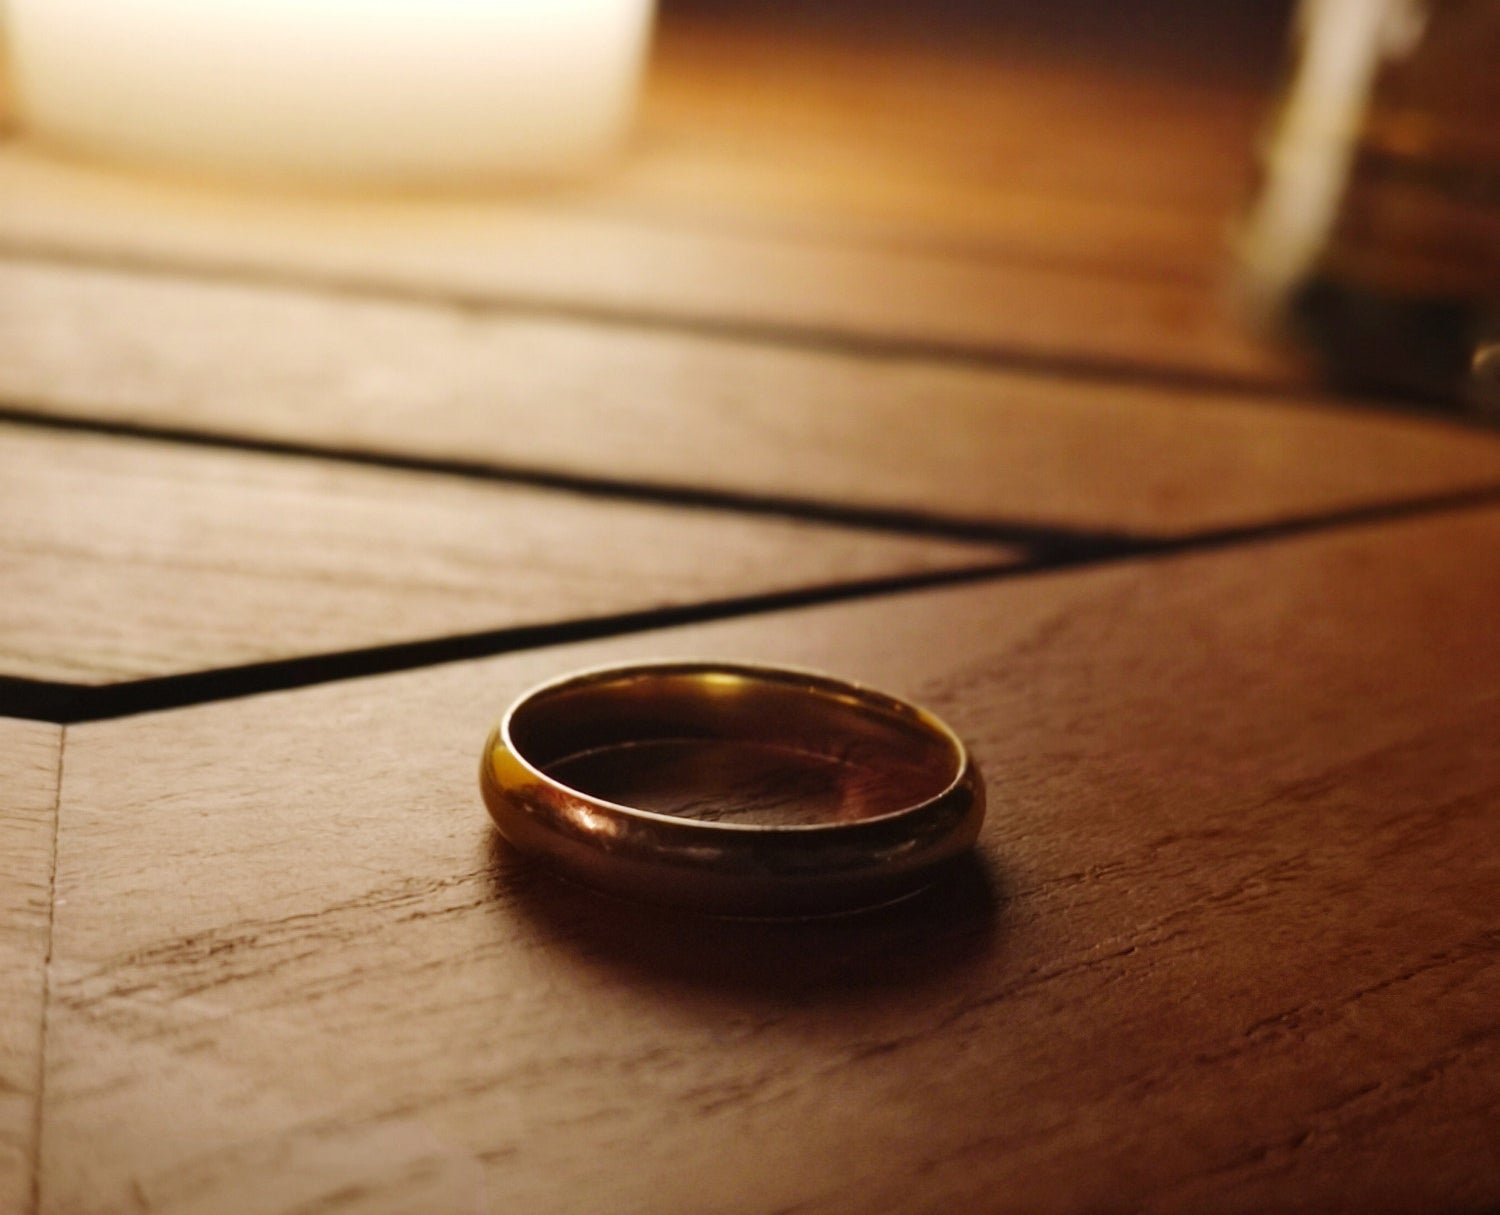 Idle wedding ring on wood nightstand